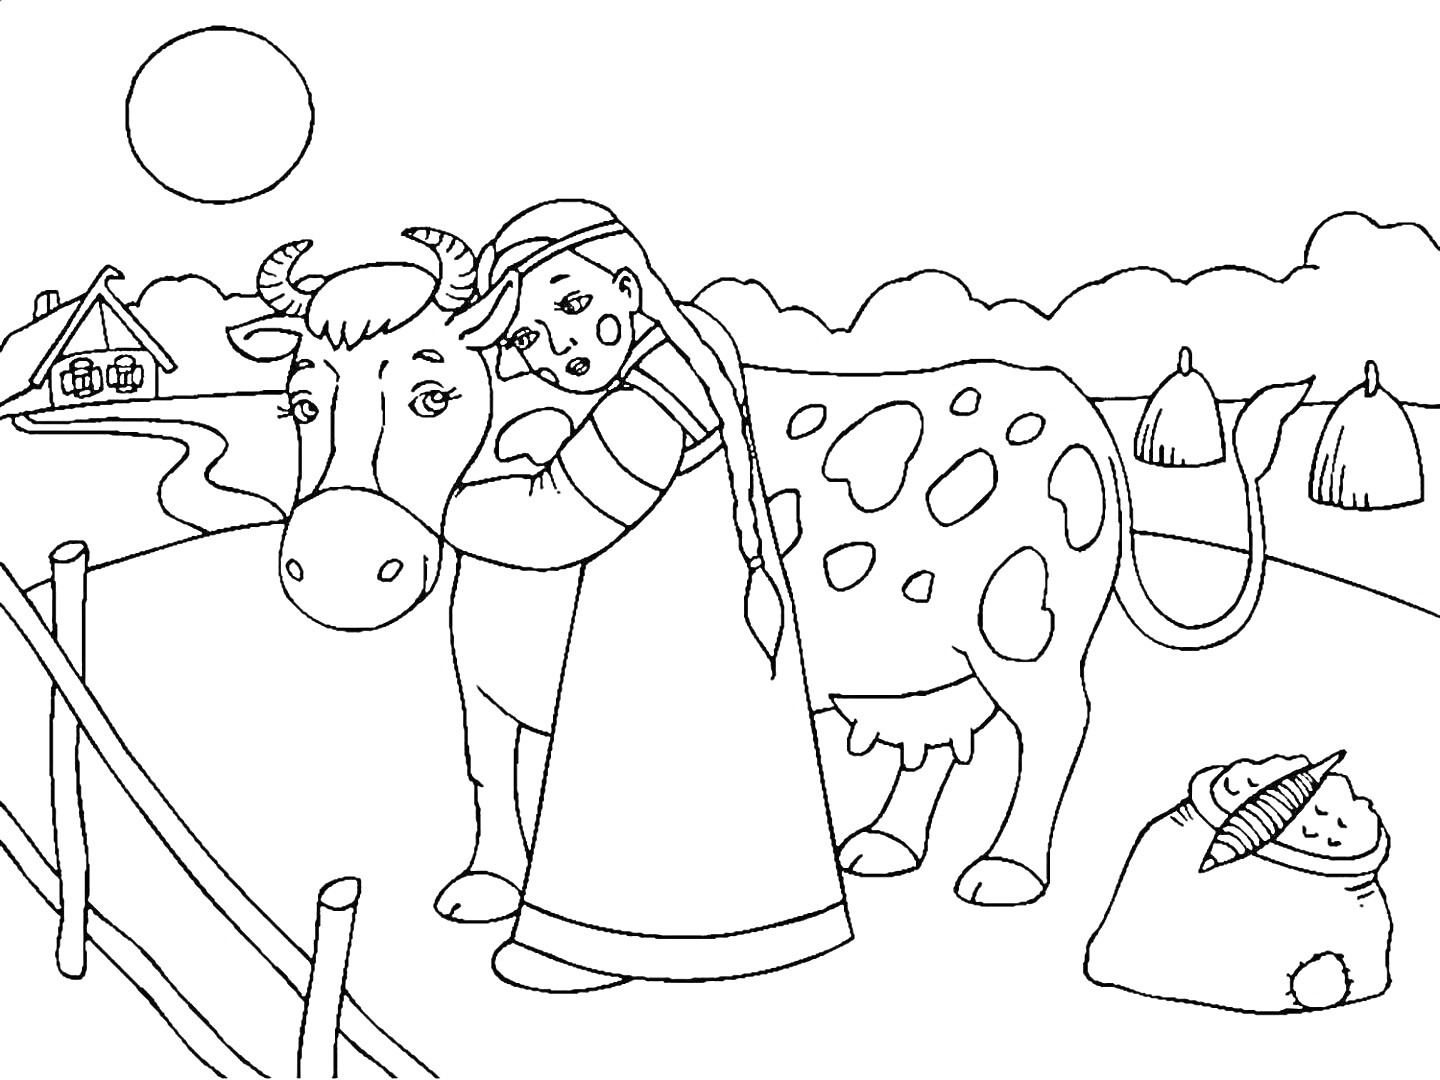 Раскраска Девочка в национальном костюме обнимает корову на пастбище, рядом стог сена и спутанный веник, на заднем плане дом и солнце